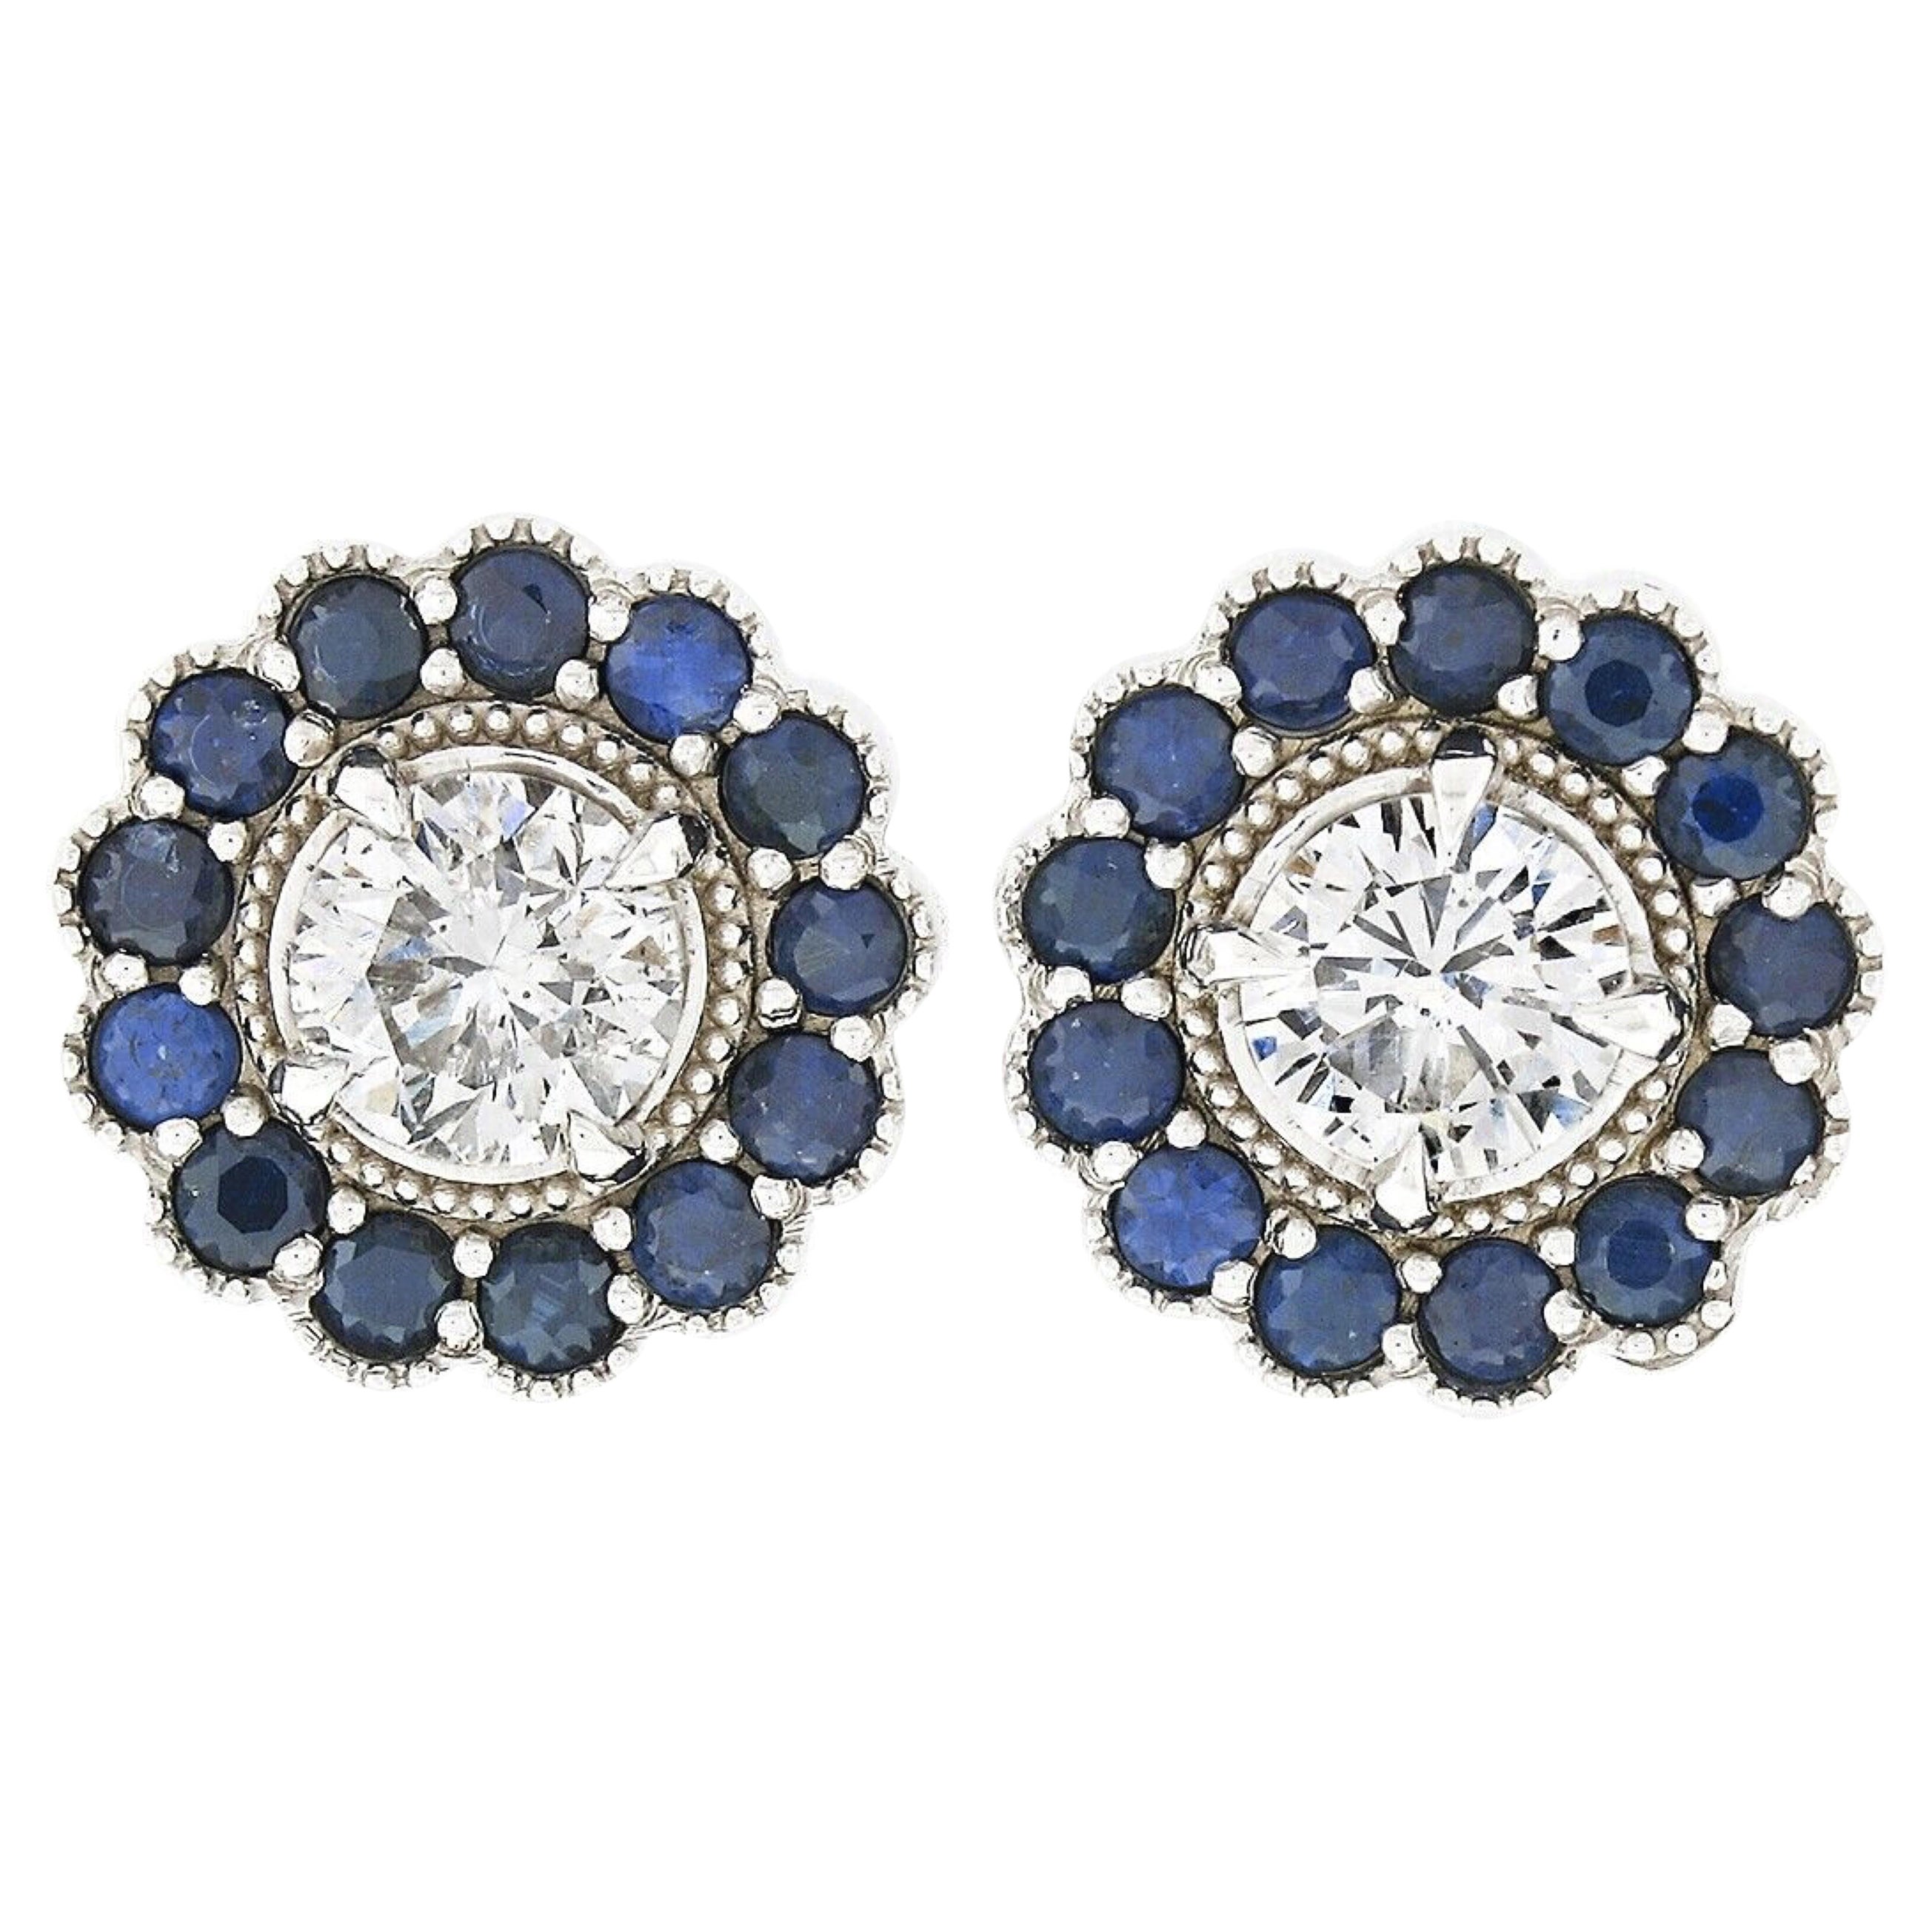 New 14k White Gold 1.51ct Diamond Sapphire Halo Milgrain Flower Cluster Earrings